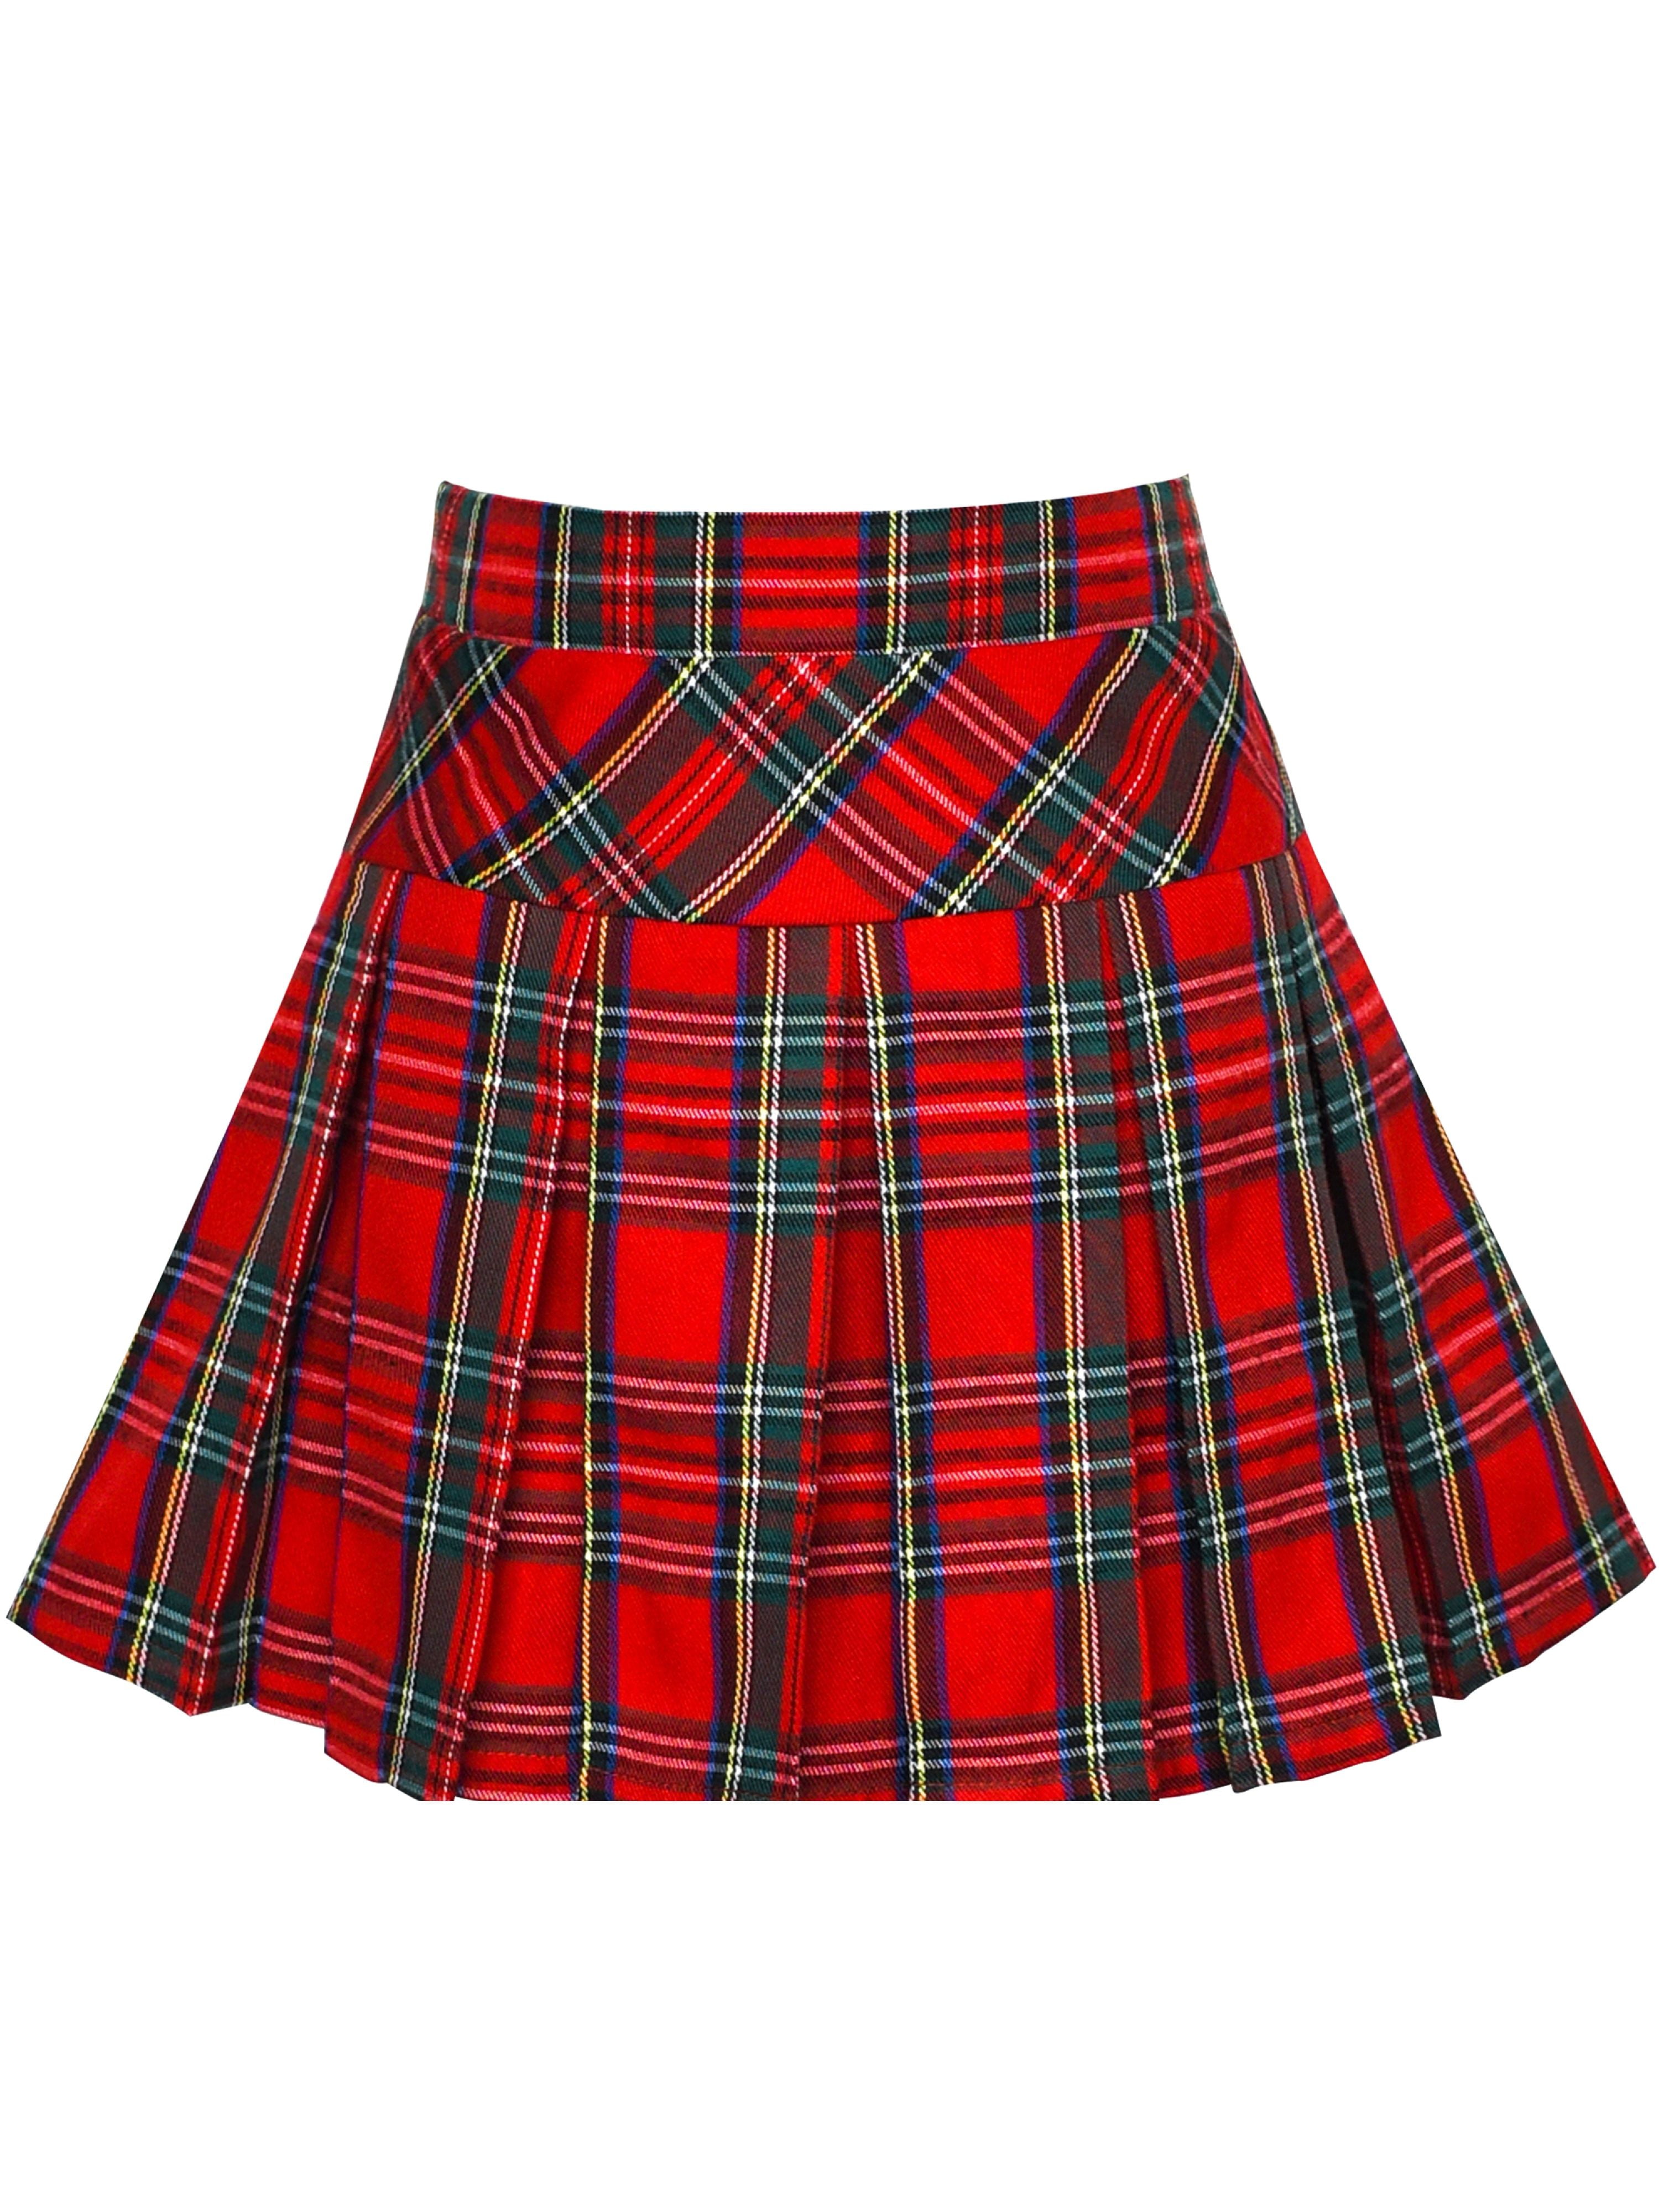 Girls Skirt Back School Uniform Red Tartan Skirt 13-14 Years - Walmart.com